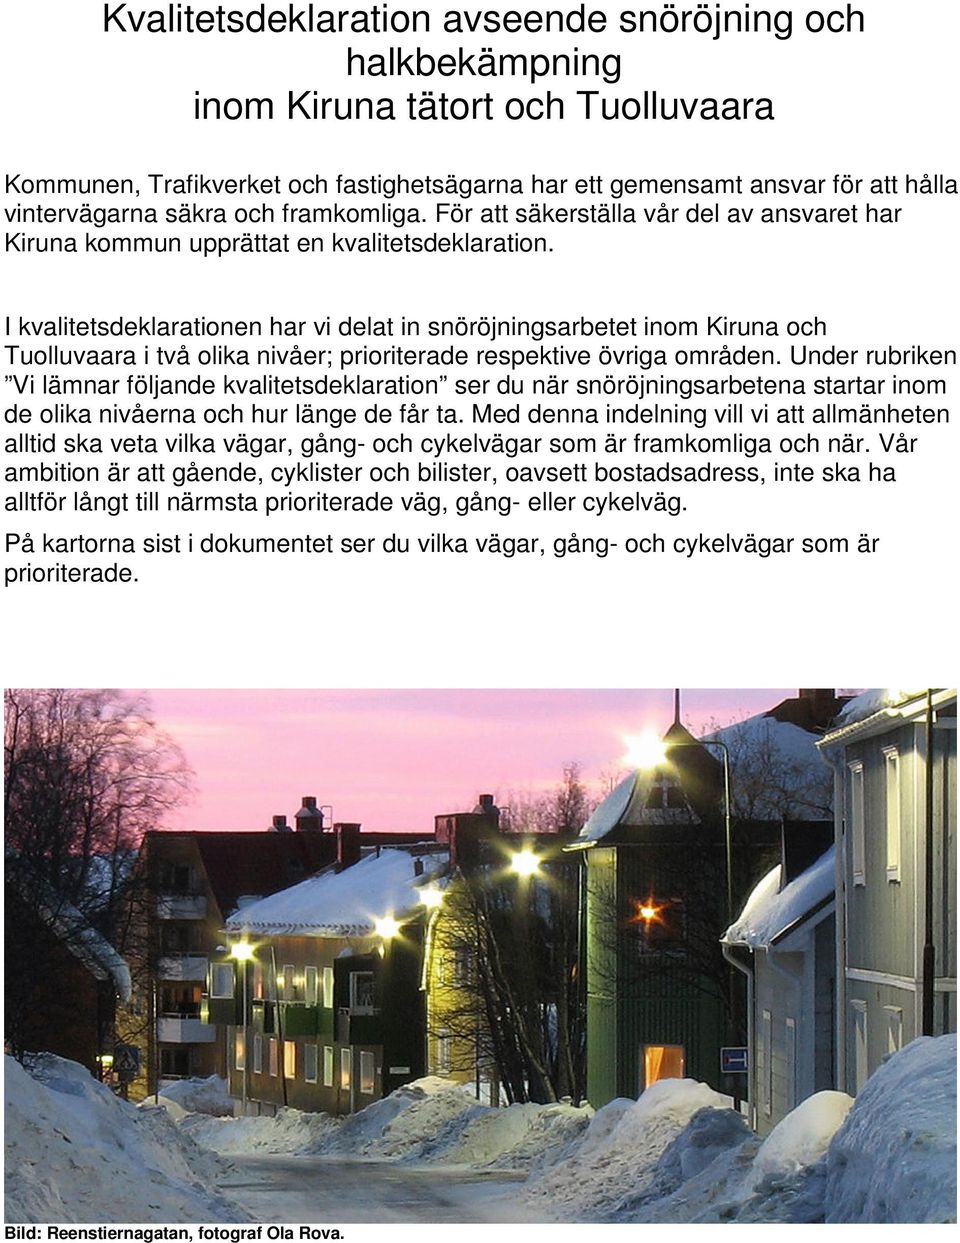 I kvalitetsdeklarationen har vi delat in snöröjningsarbetet inom Kiruna och Tuolluvaara i två olika nivåer; prioriterade respektive övriga områden.